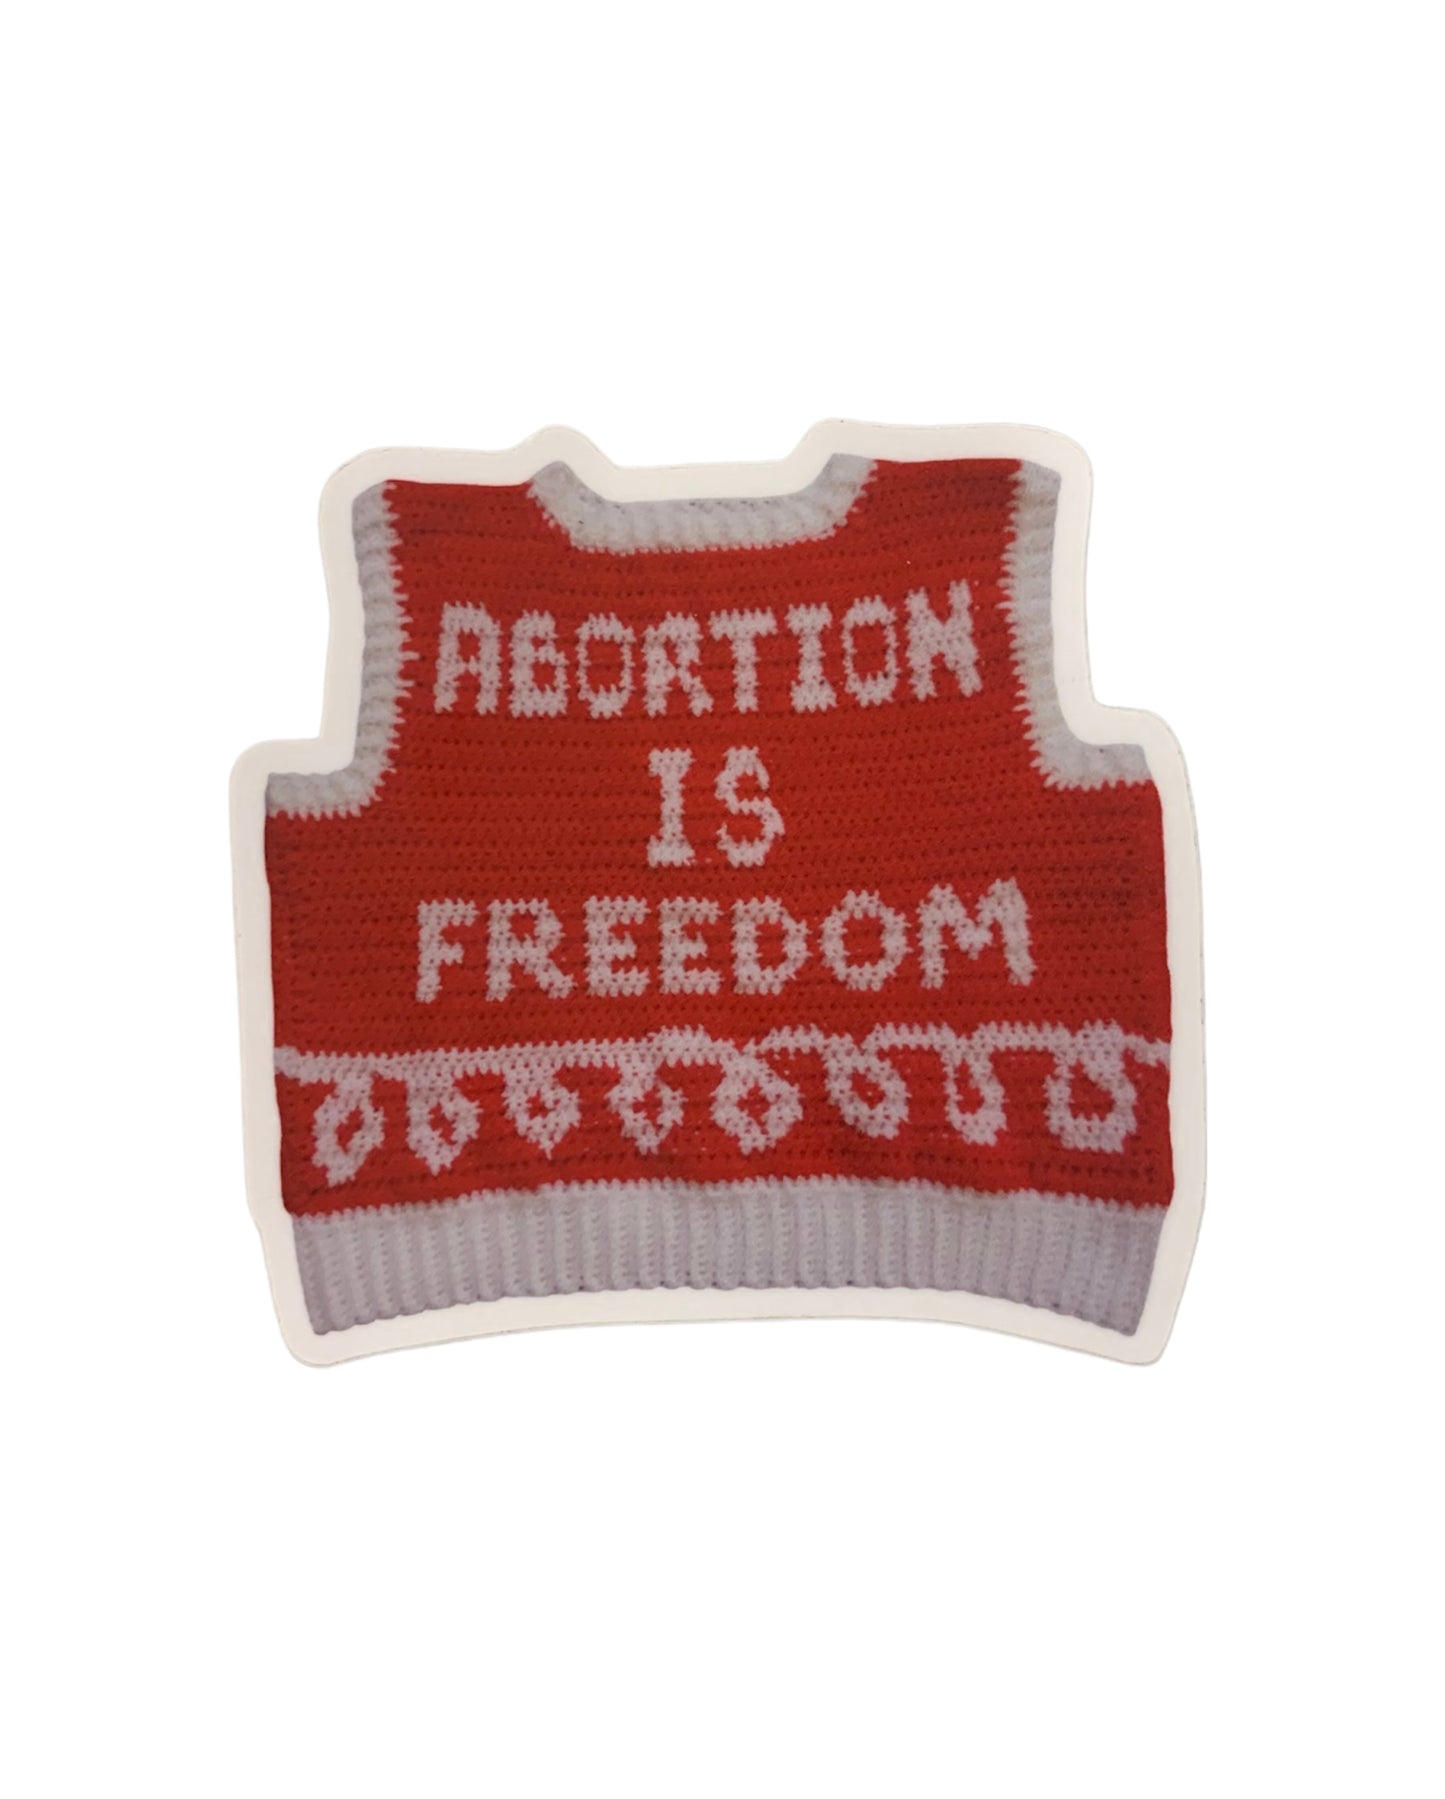 Abortion is Freedom Sticker